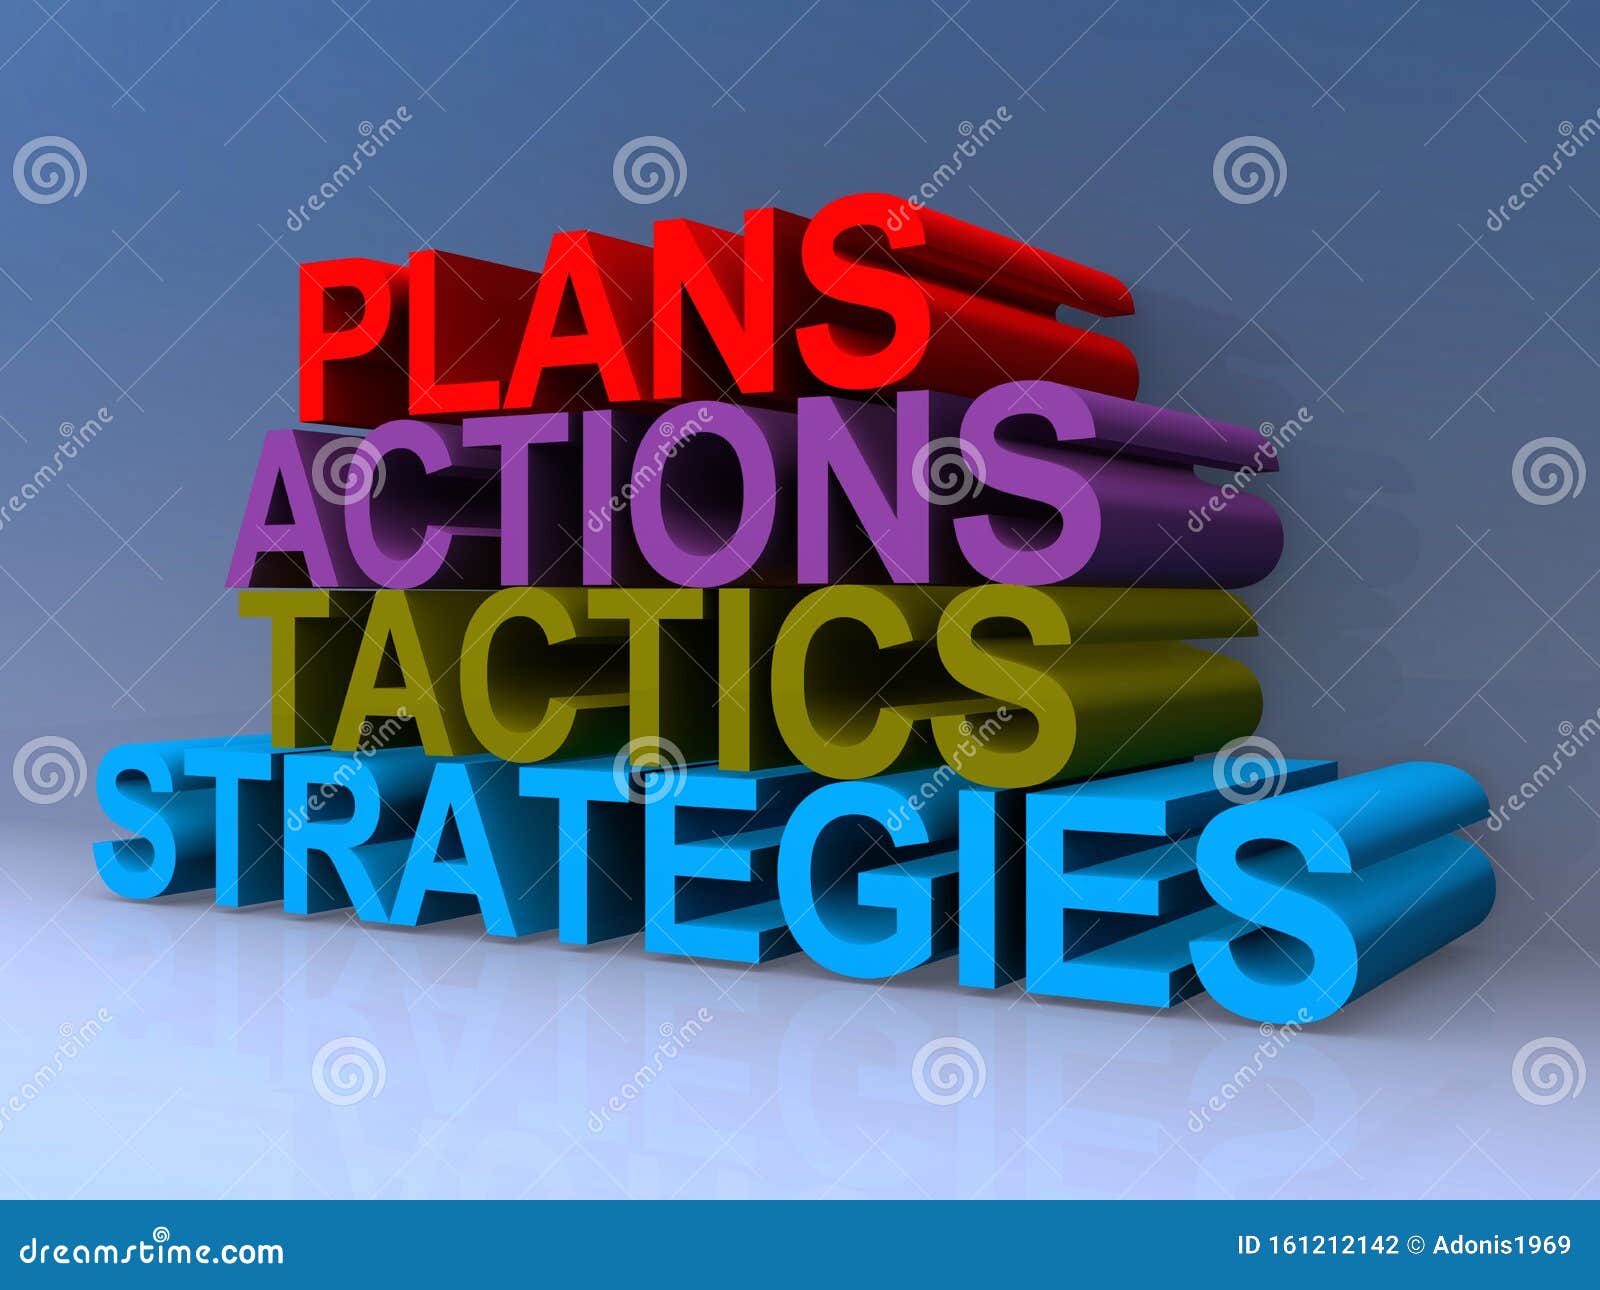 plans actions tactics strategies